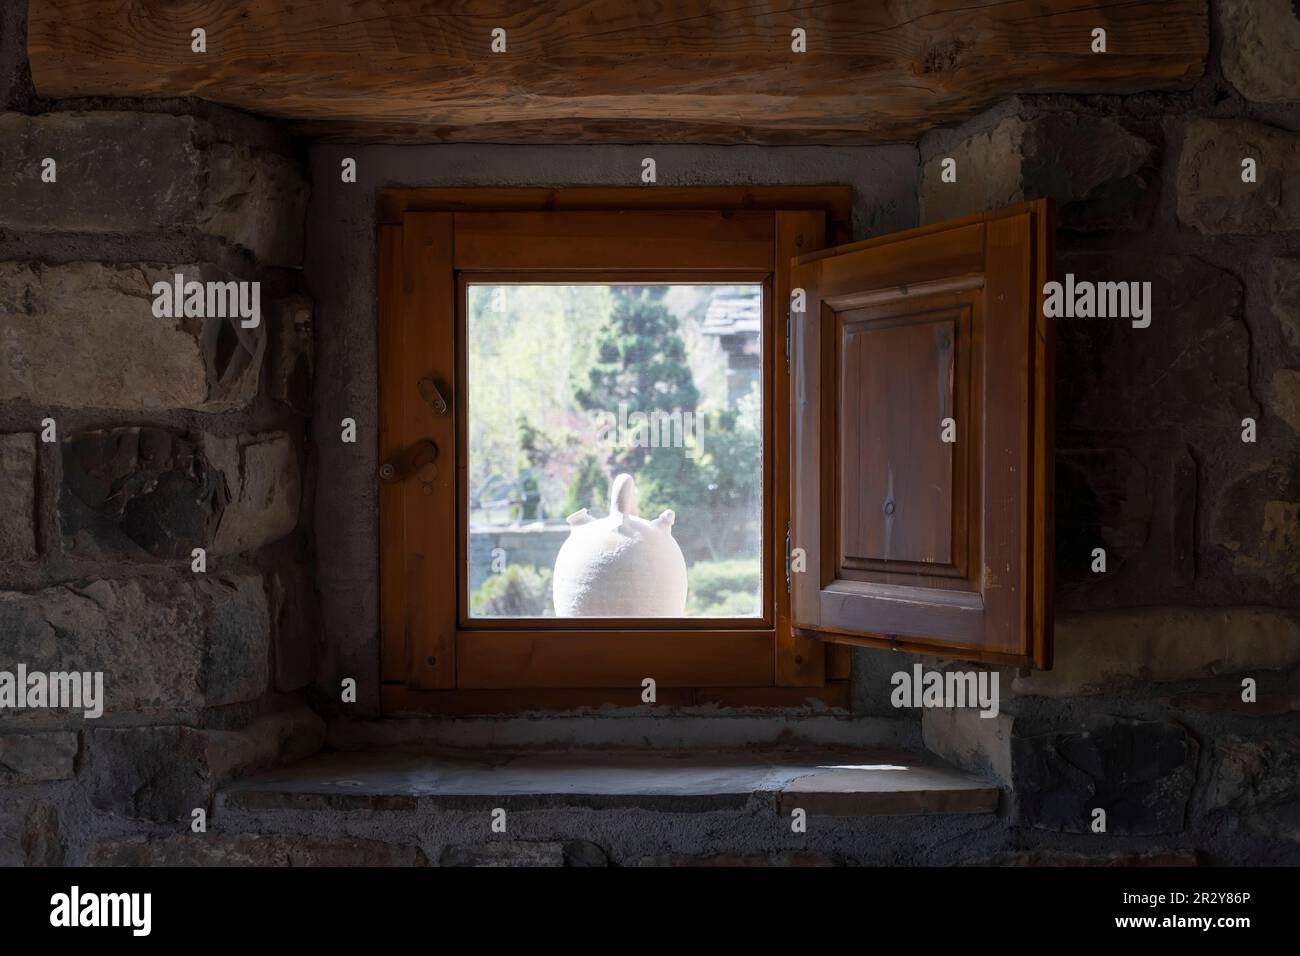 un botijo bianco visto dall'interno di una finestra di una casa di villaggio in pietra con persiane in legno, tipico botijo in argilla spagnola per mantenere l'acqua fresca in s Foto Stock